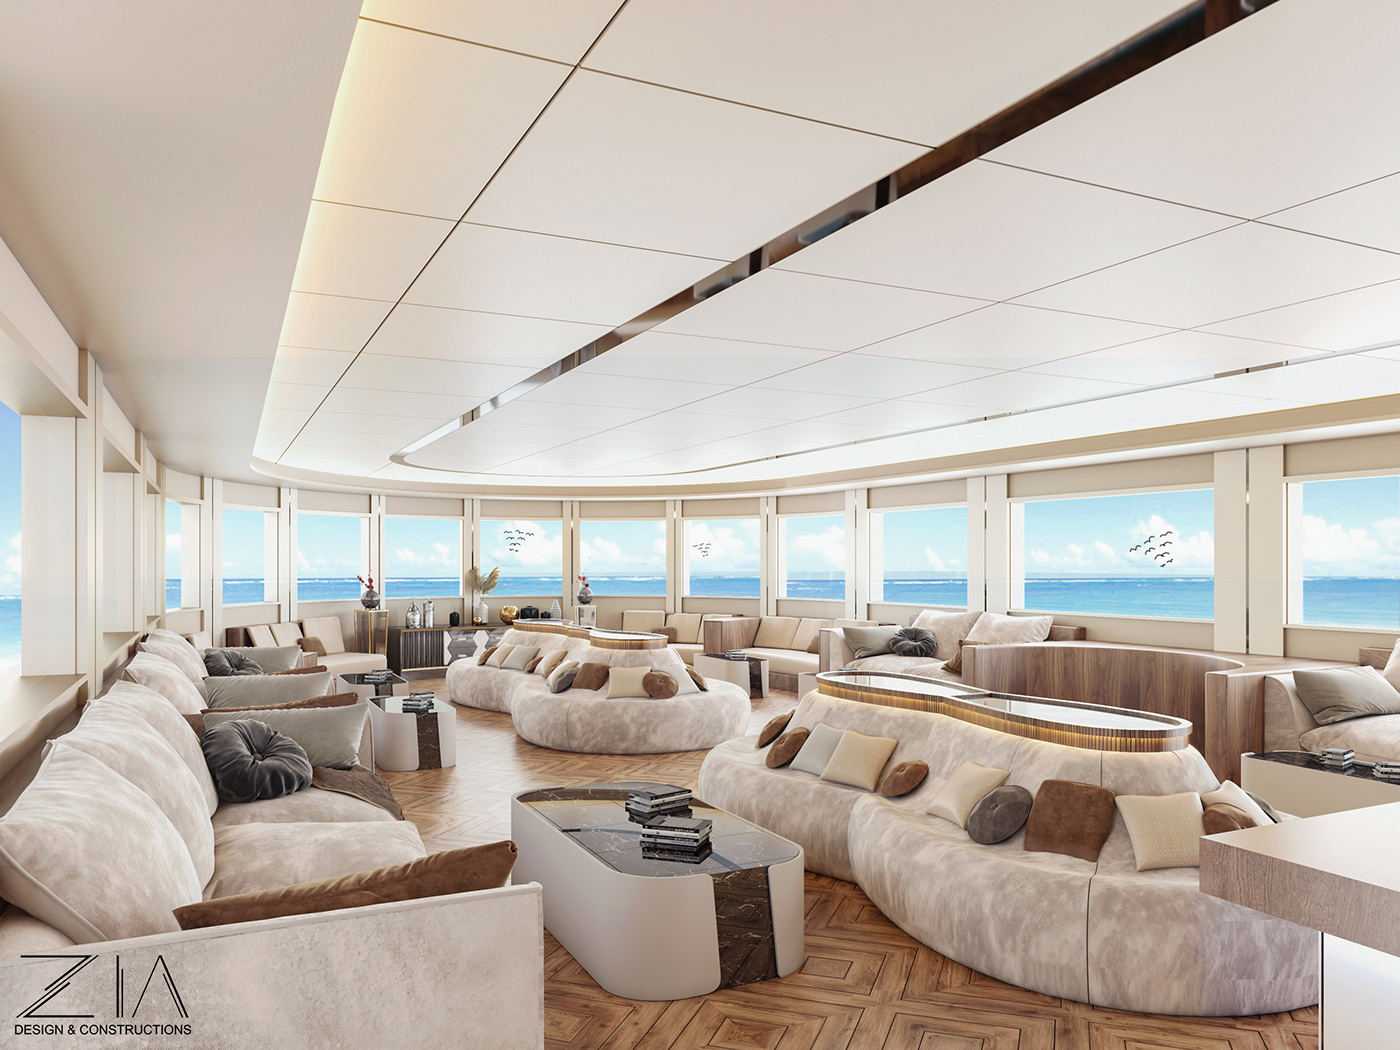 3ds architecture hurghada interior design  Render salondesign visualization yacht Yacht Design yacht salon design